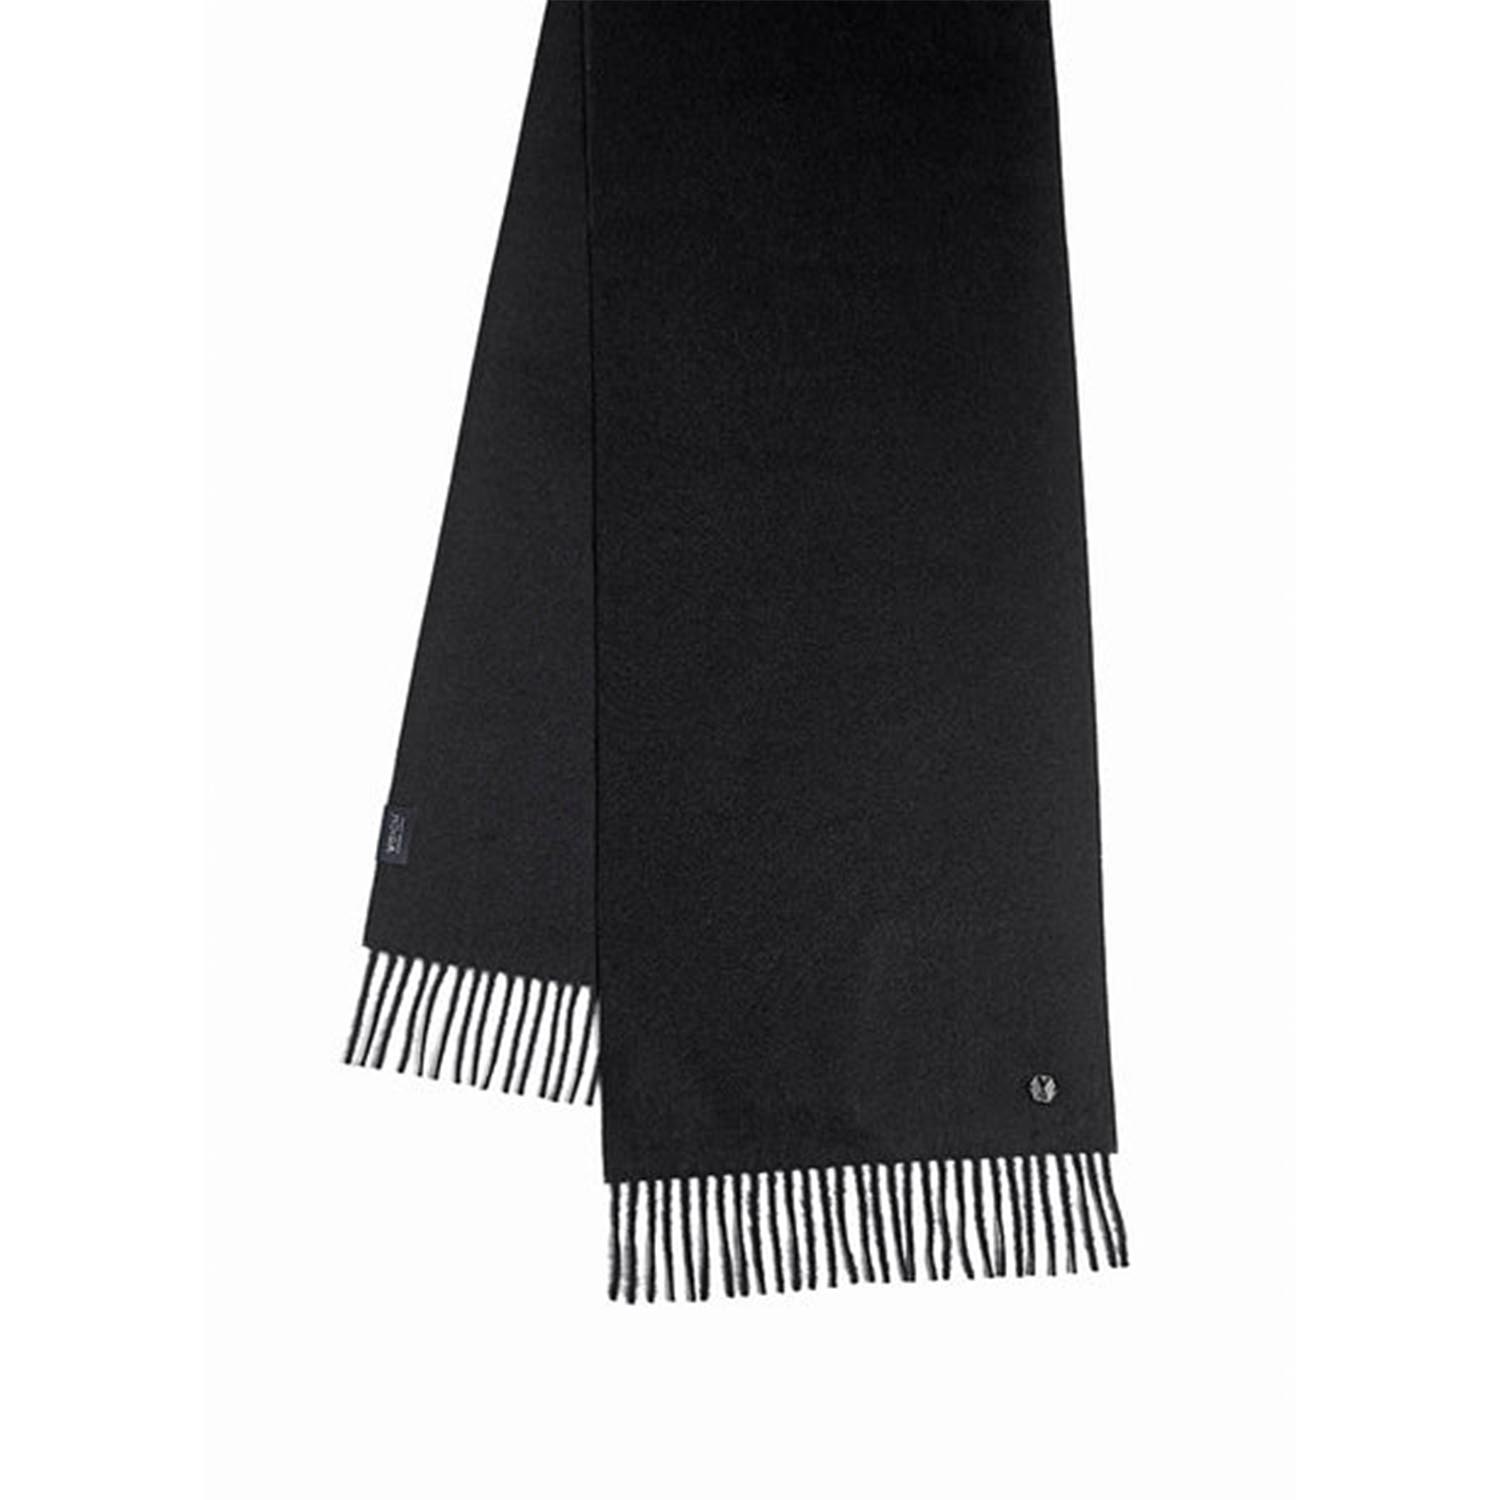 Schal Alma, Farbe jet black von Weich Couture Alpaca